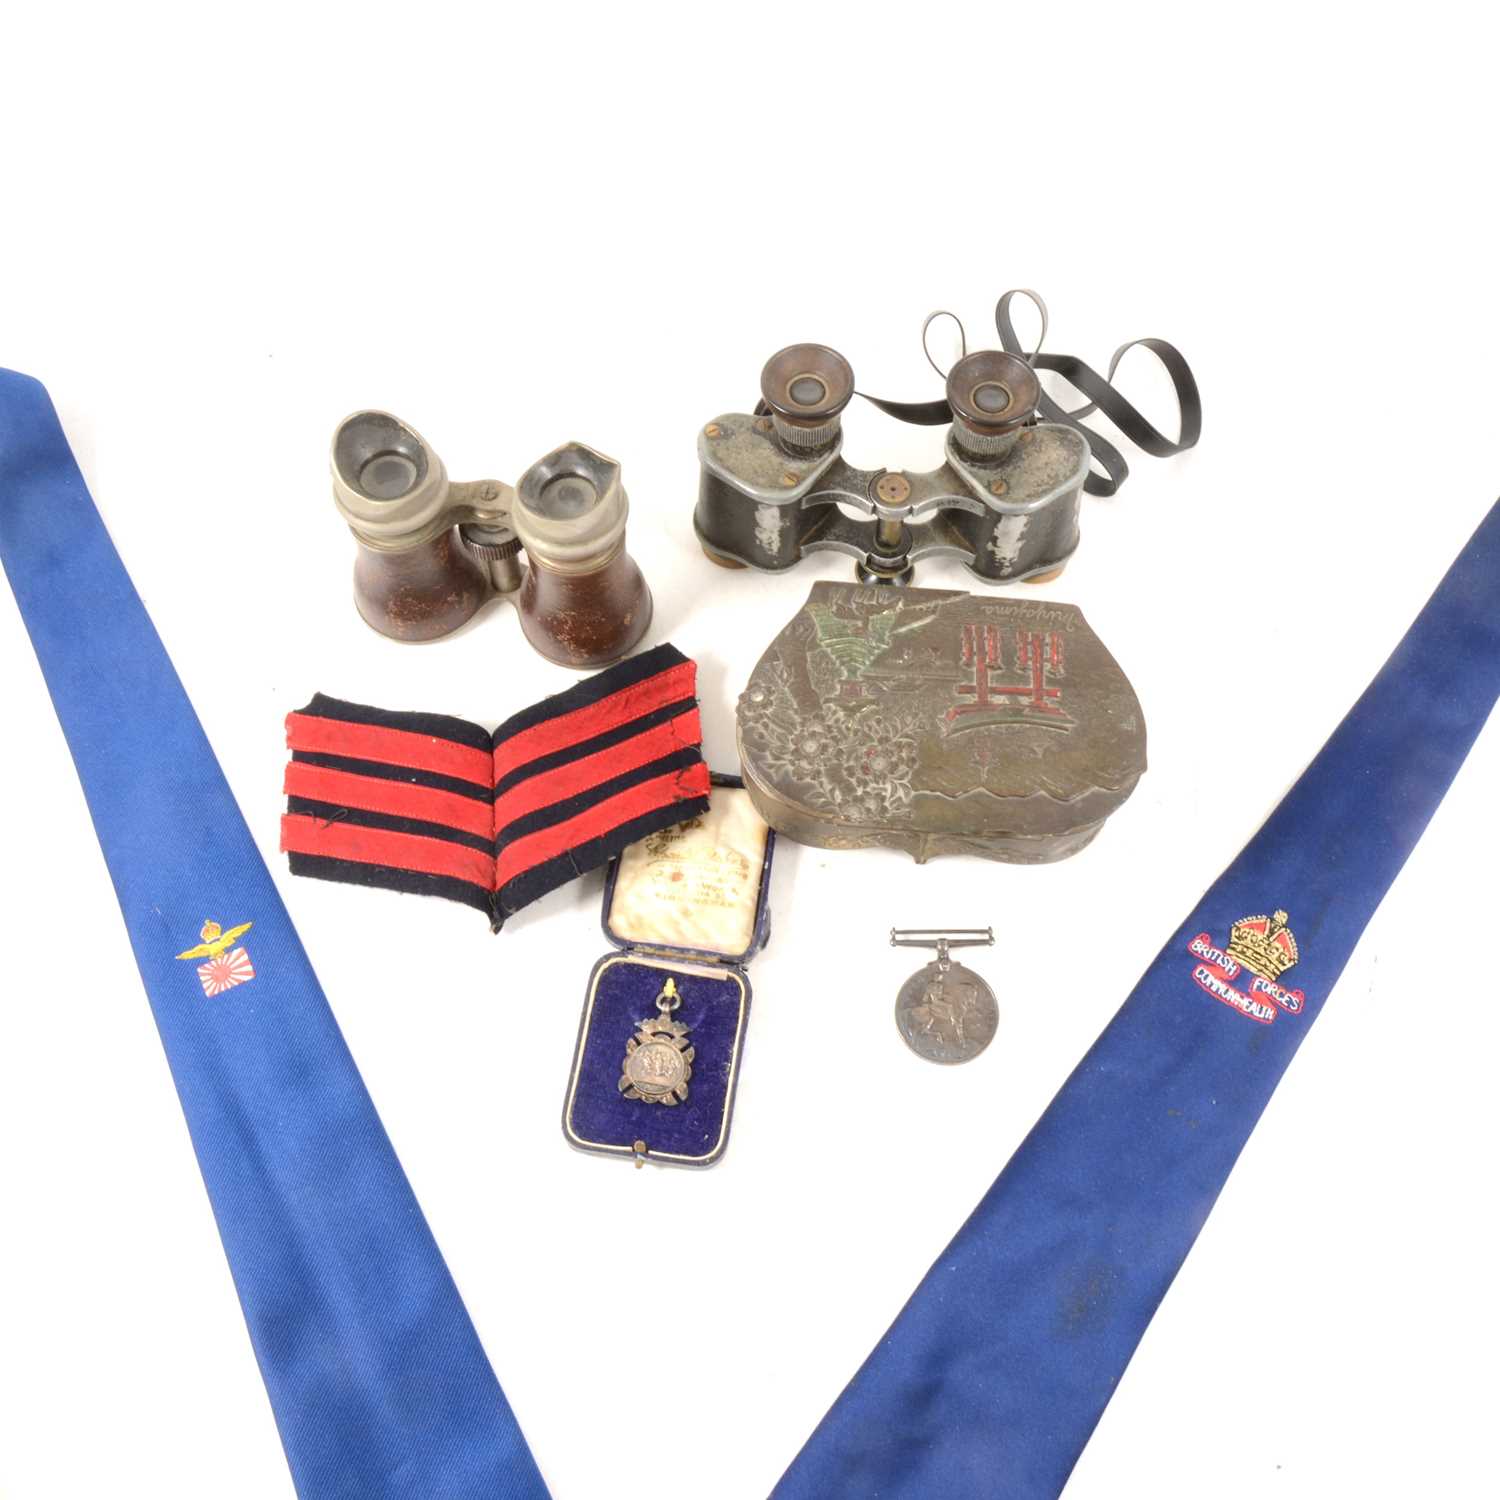 Lot 196 - Militaria - WWI British War medal, binoculars, badges etc.